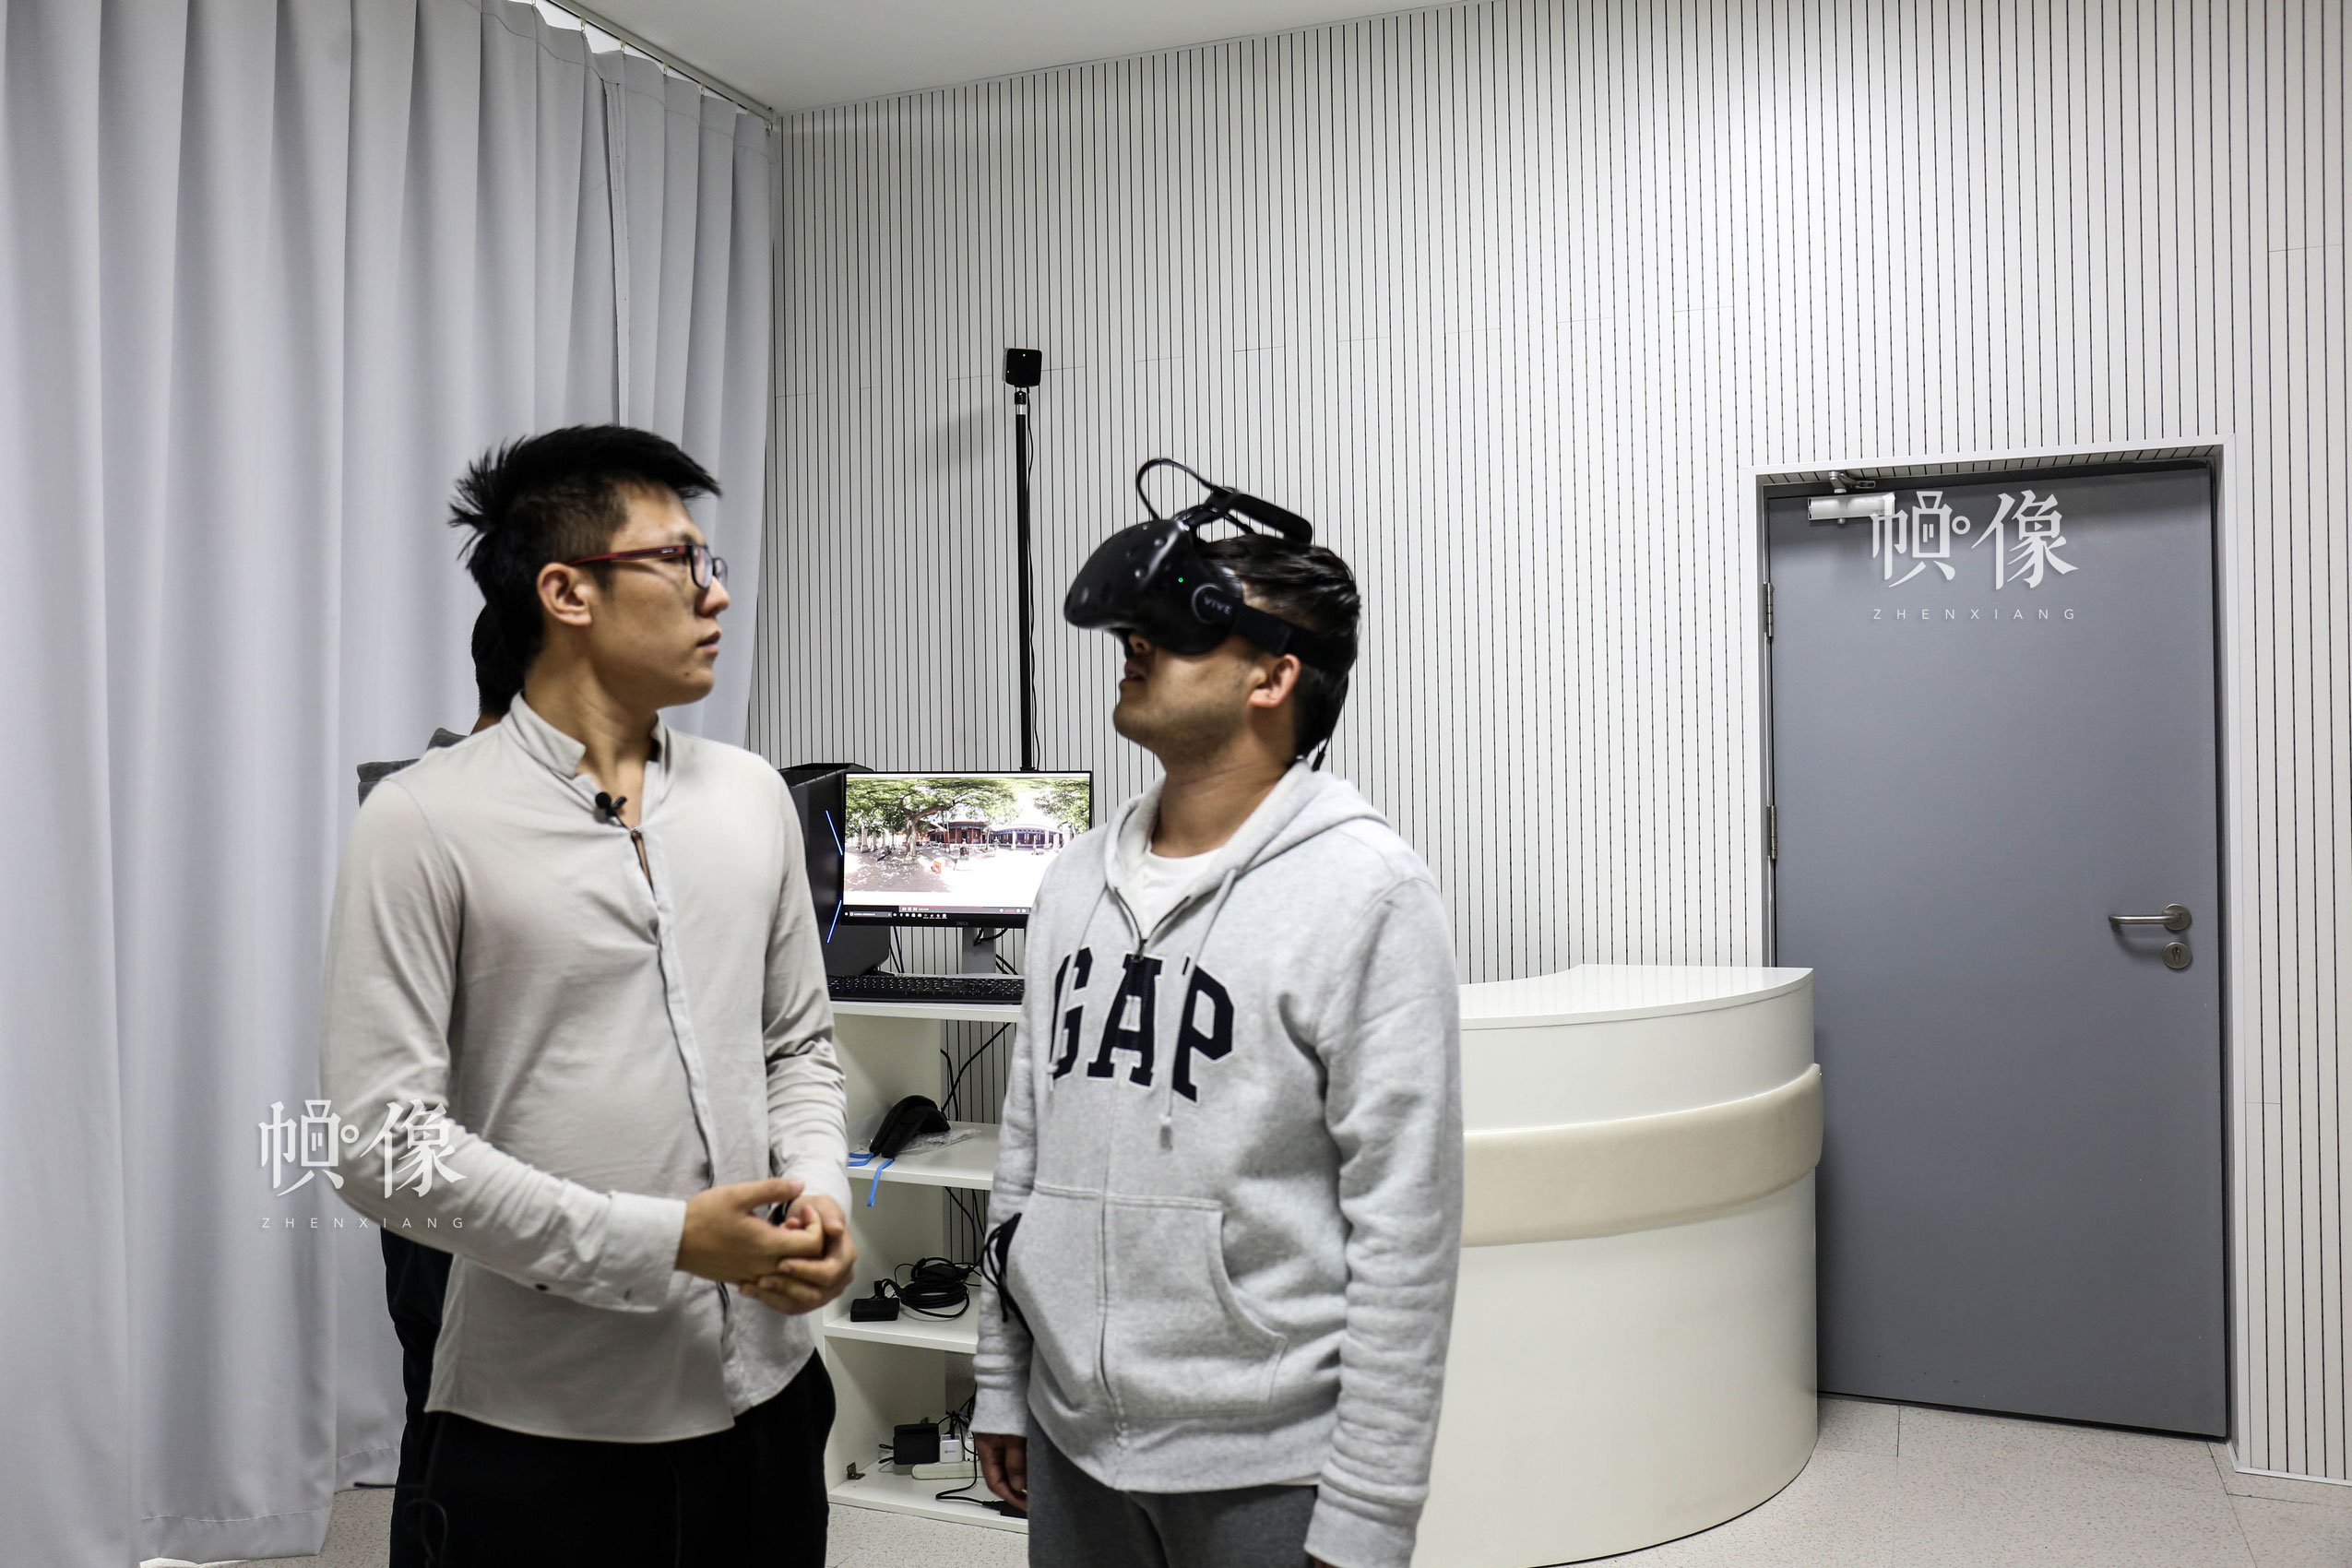 朝陽規劃藝術館VR(Virtual-Reality-)技術體驗室，圖為講解員（左）在介紹引導體驗者（右）體驗東嶽廟場景VR技術。中國網記者 趙超 攝